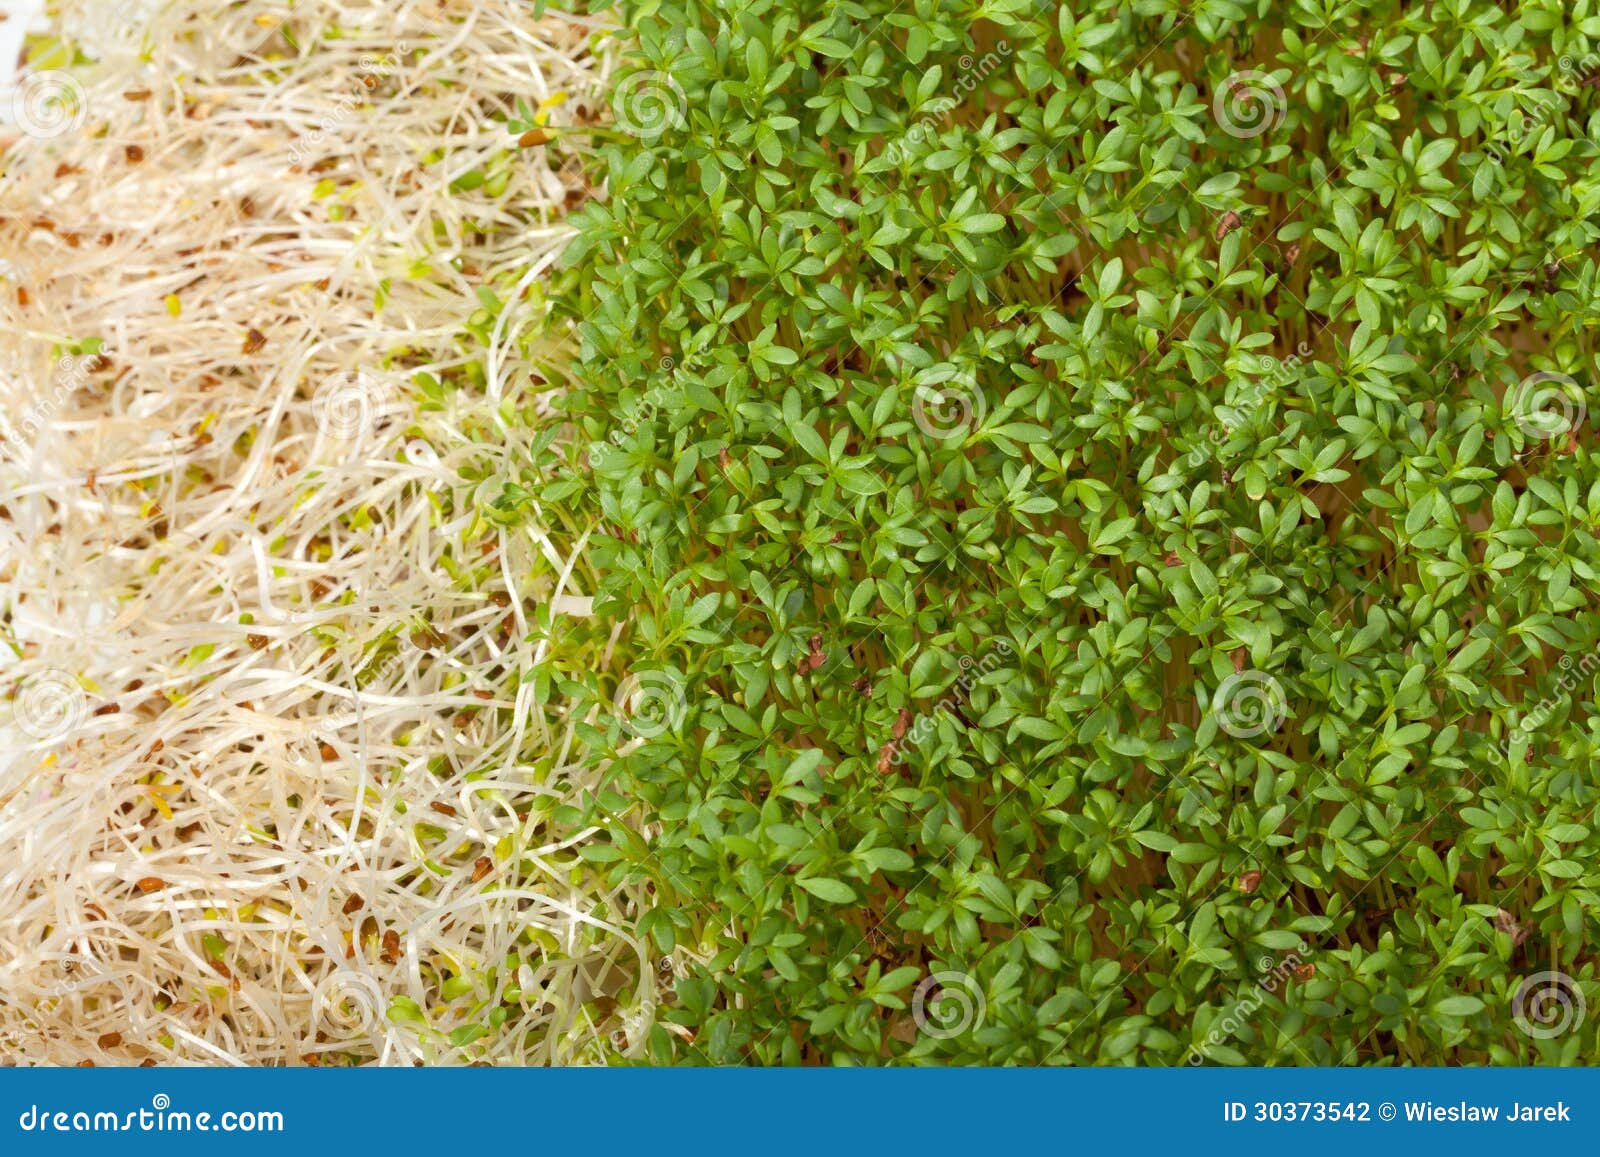 Germogli e crescione di alfalfa freschi su fondo bianco